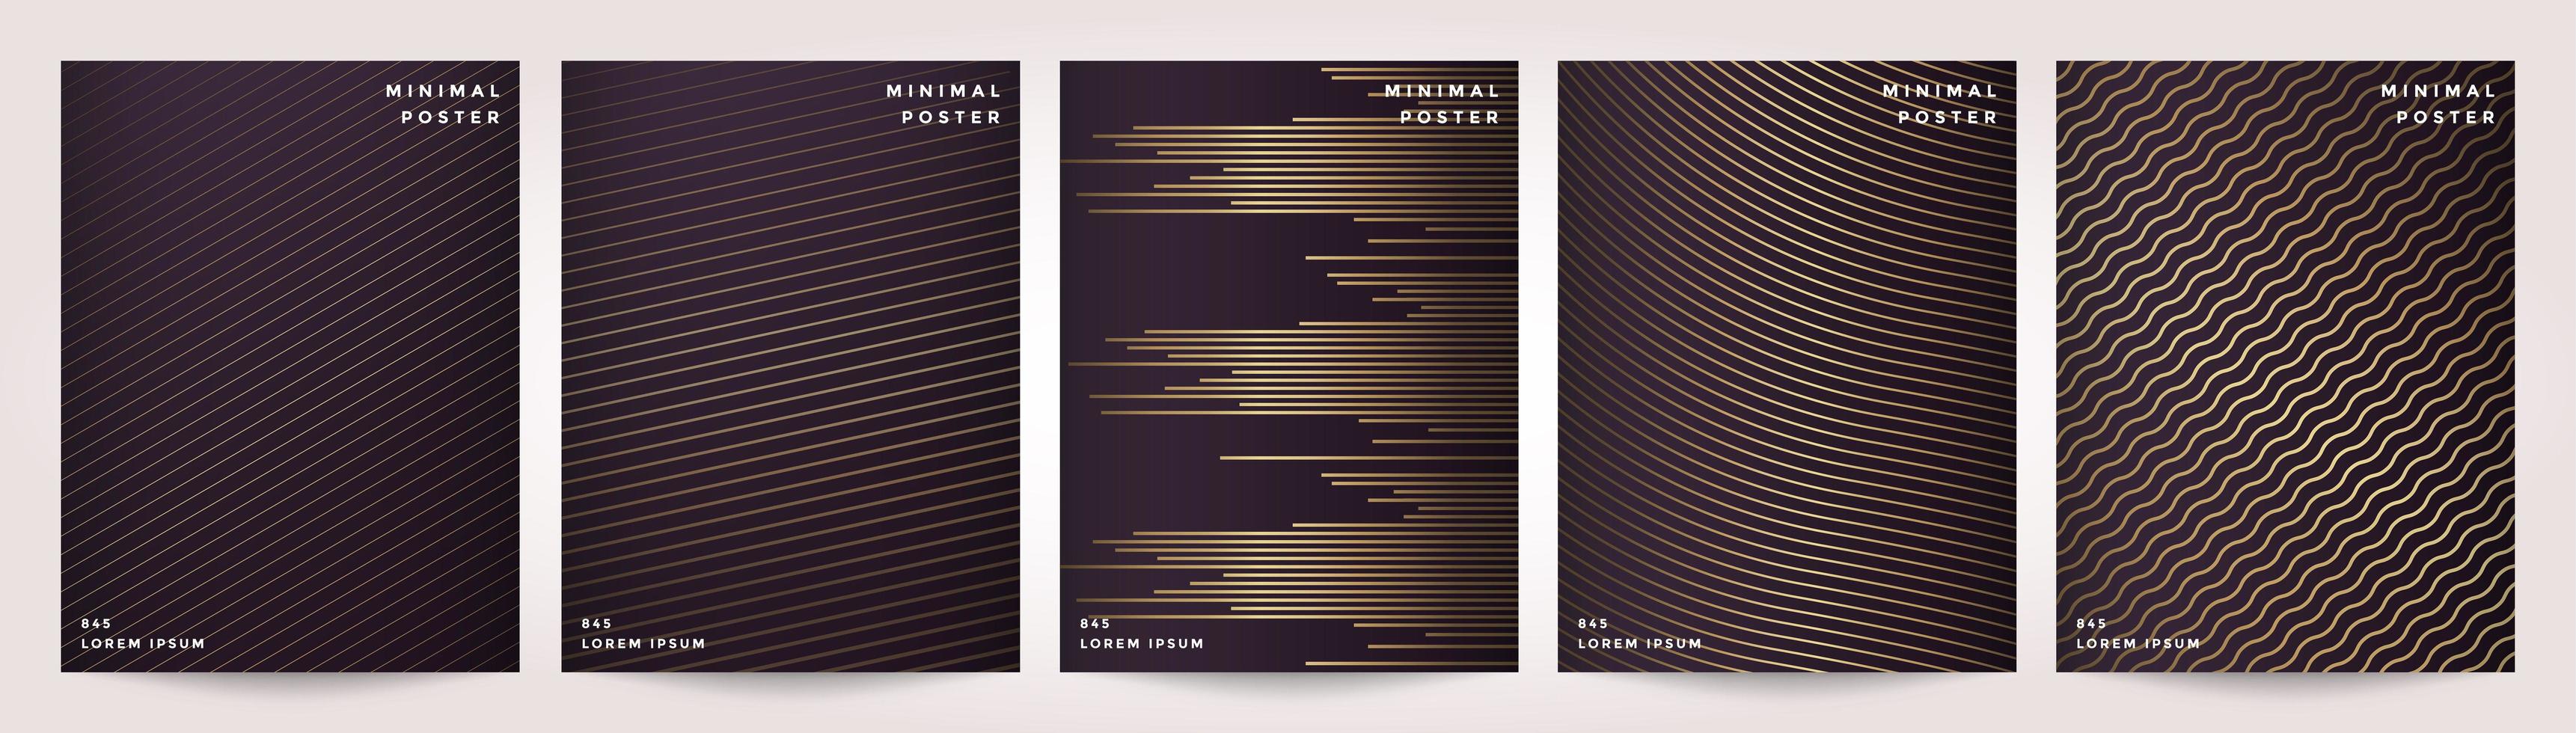 minimal täckning i guld abstrakt linje mönster för affisch designuppsättning vektor